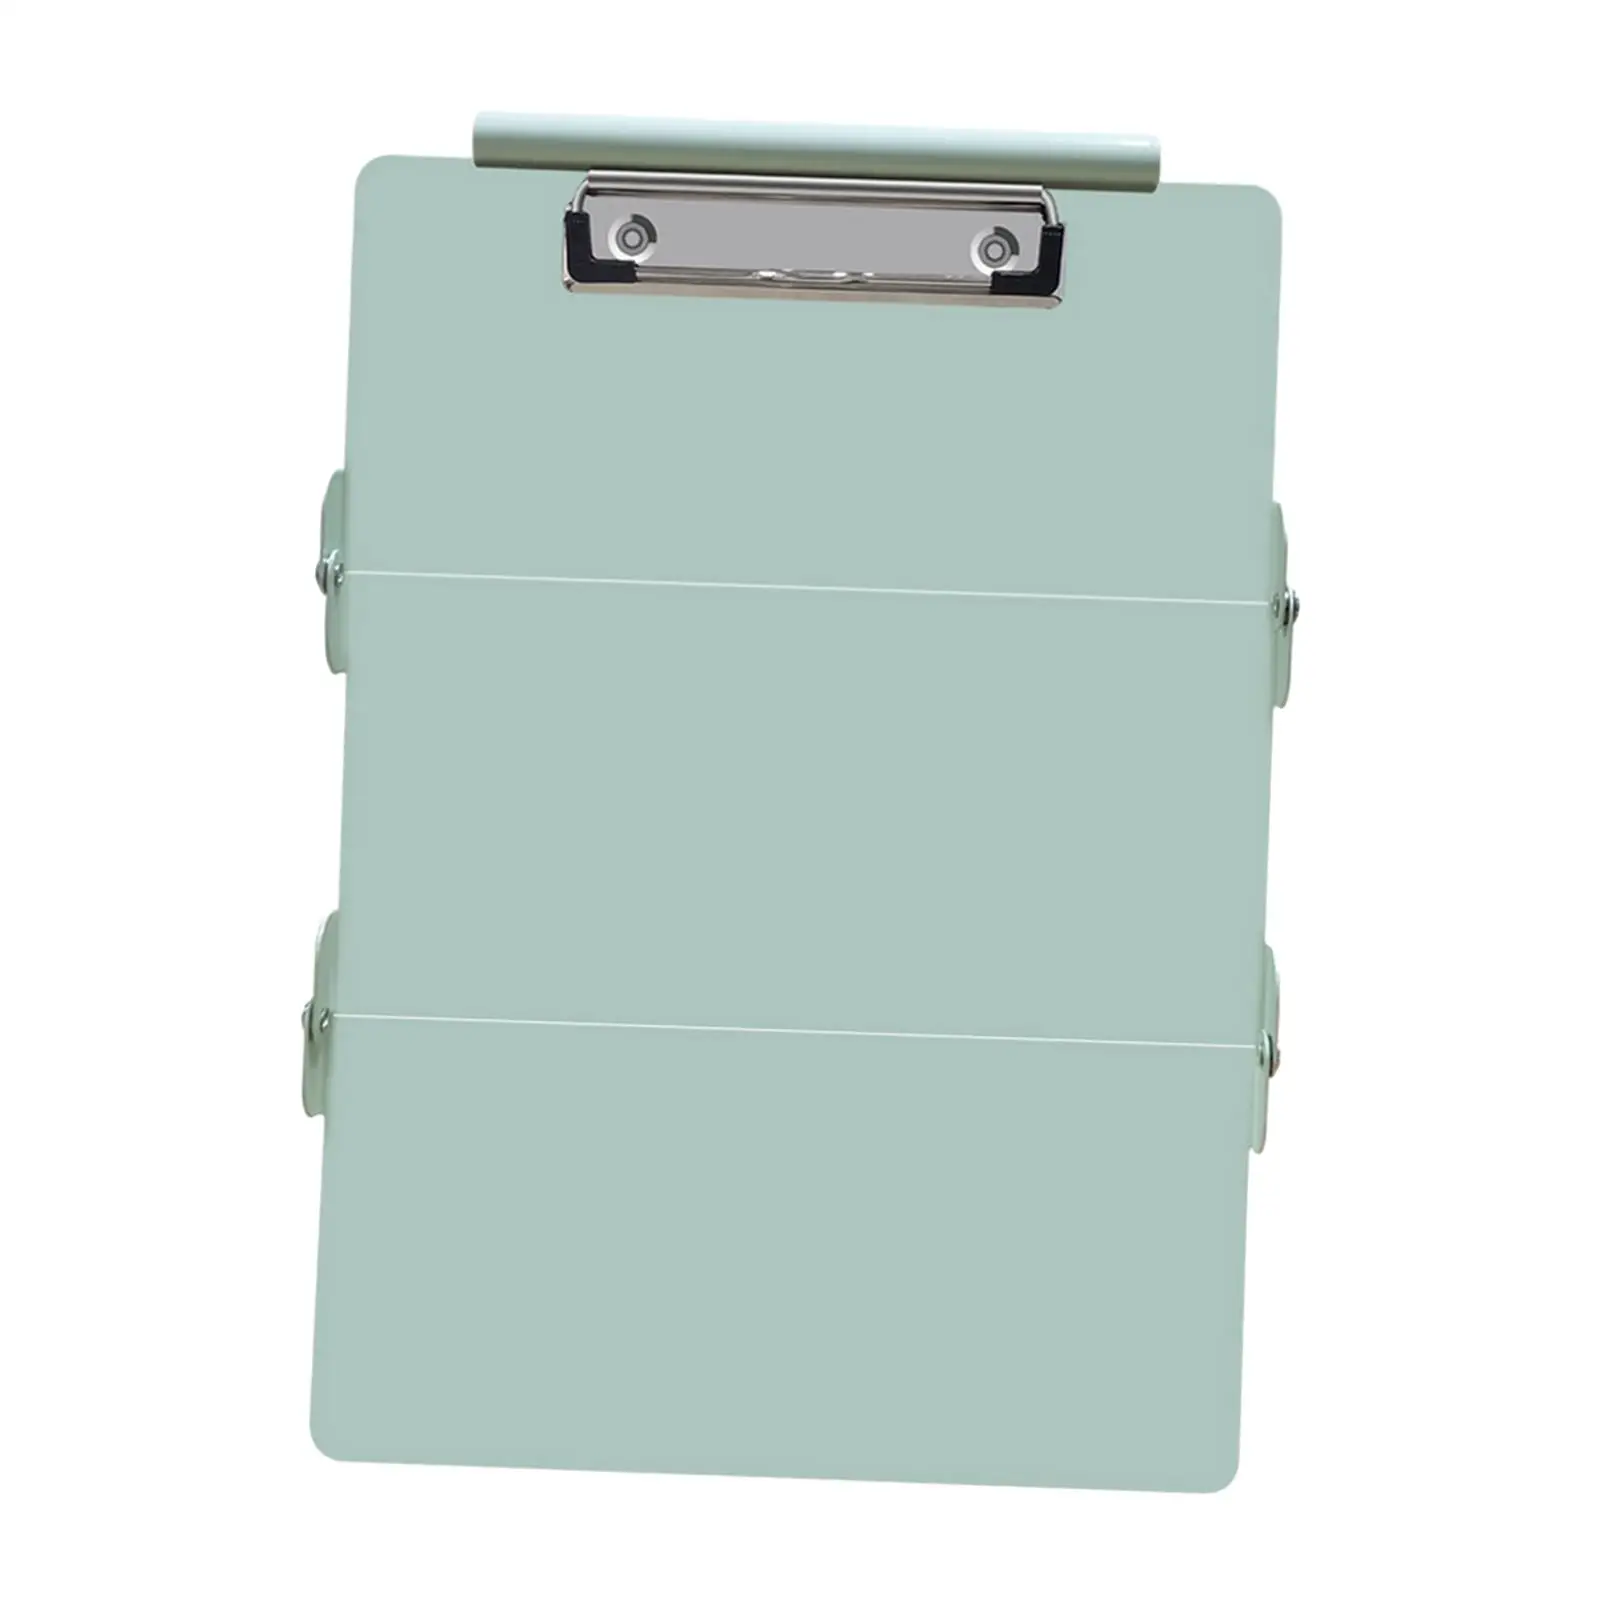 Nursing Clipboard Nurse Clipboard Foldable Professional Aluminum Alloy 3 Layer Compact Nurse Clip Boards Notepad File Folder